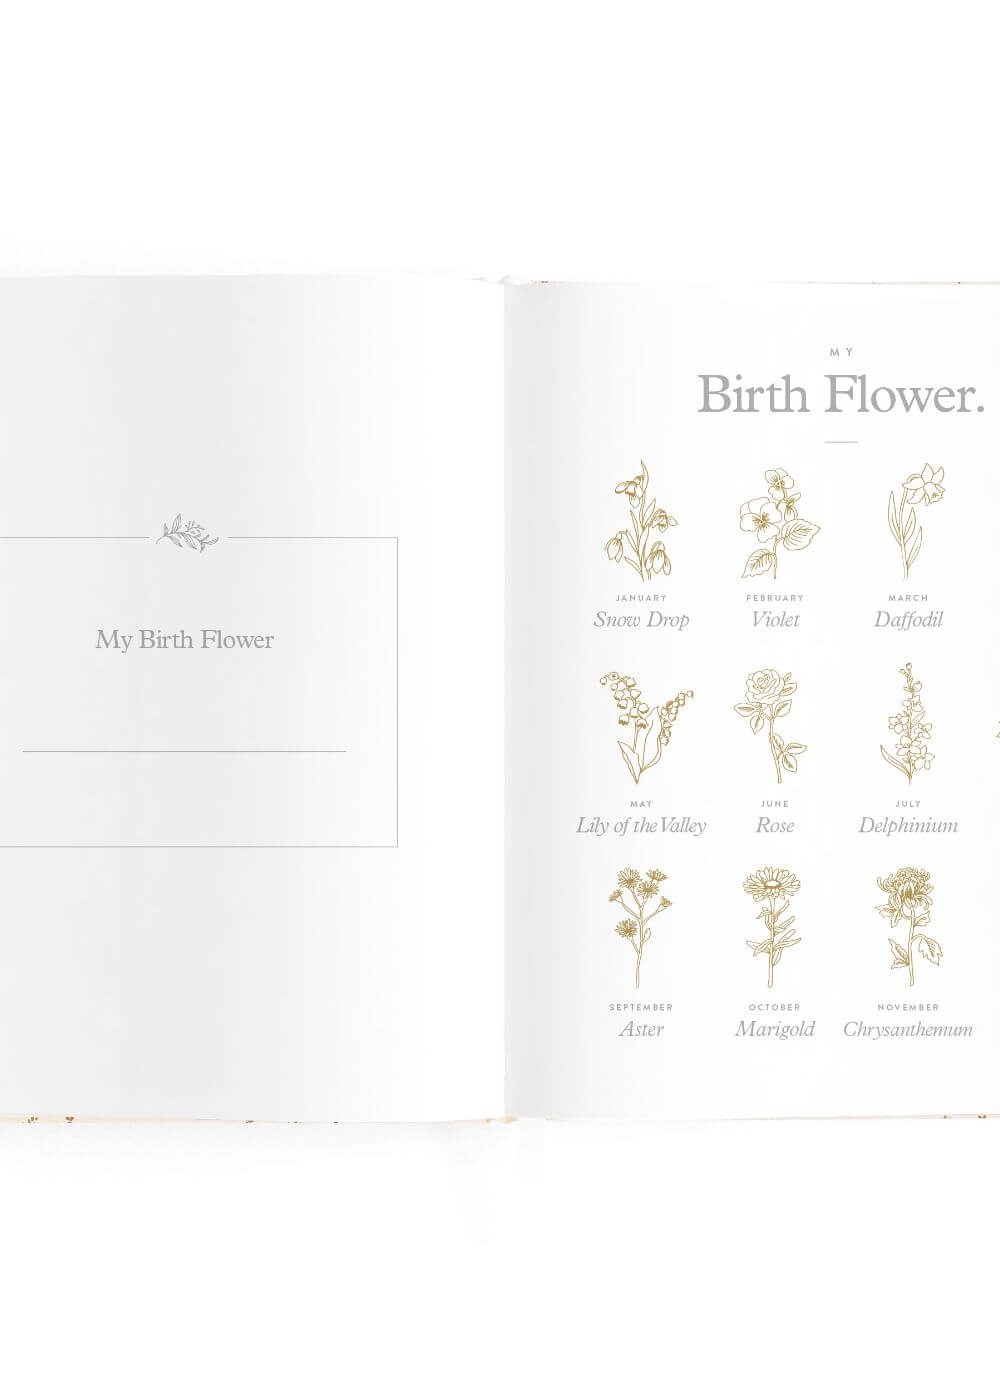 Fox & Fallow - Baby Book in Broderie | Queen Bee